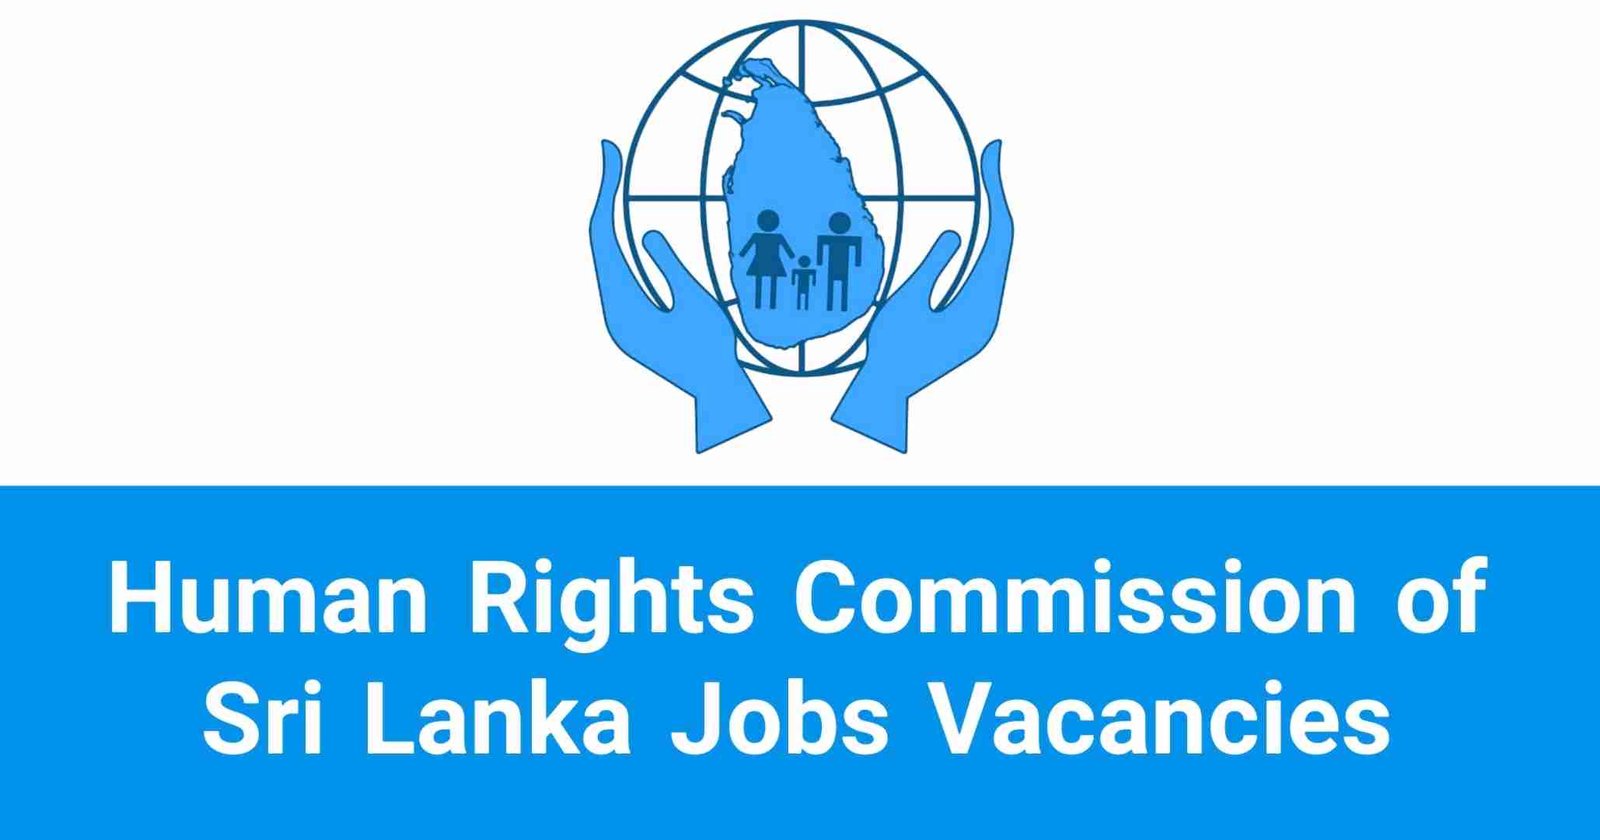 Human Rights Commission of Sri Lanka Jobs Vacancies